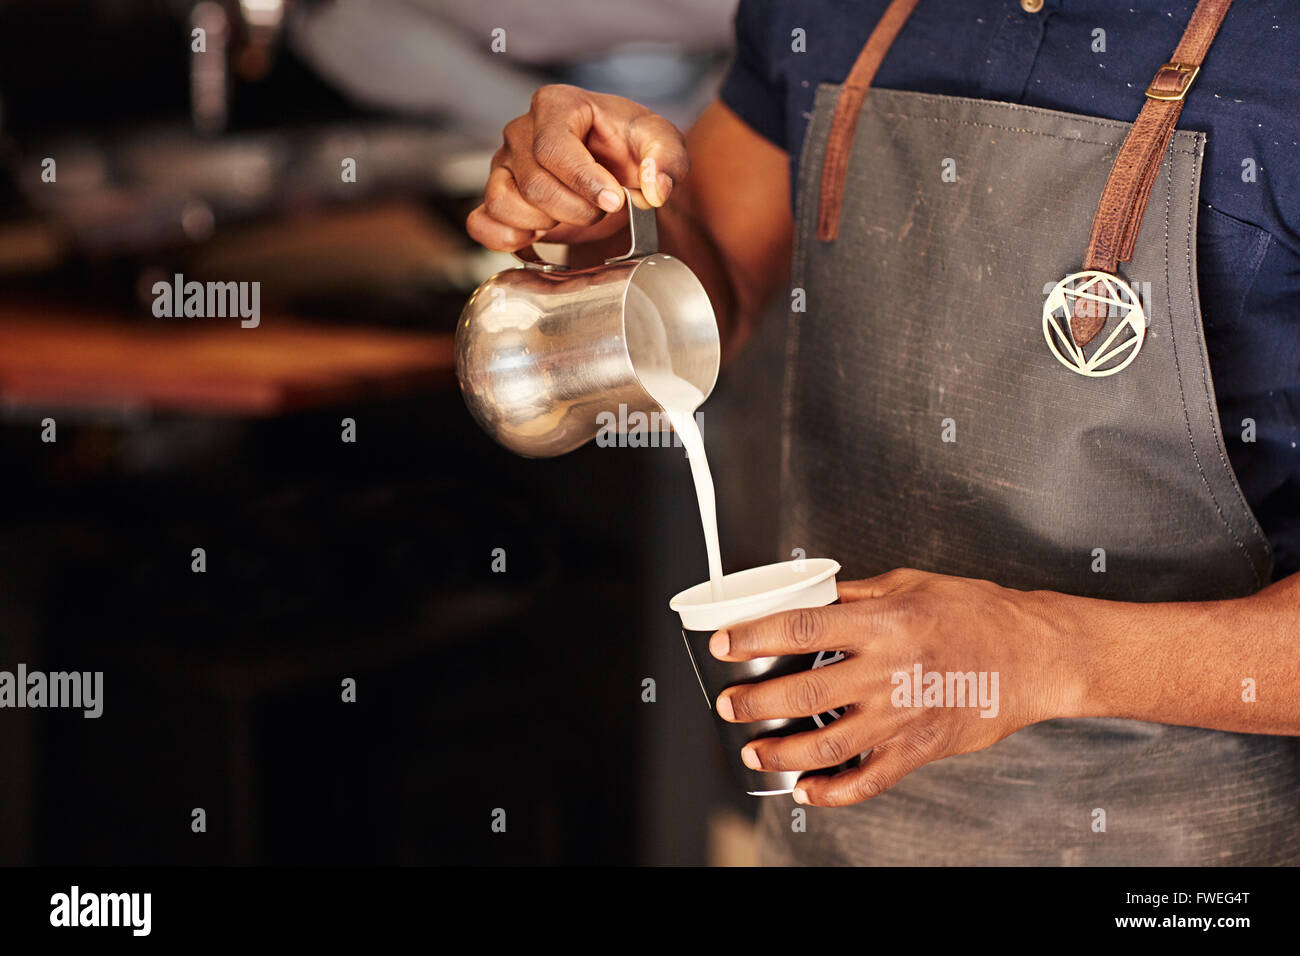 Bild von einem afrikanischen Barista sorgfältig gießt Milch aus einem Edelstahl-Krug in eine Take-away Tasse in einem Café beschnitten Stockfoto